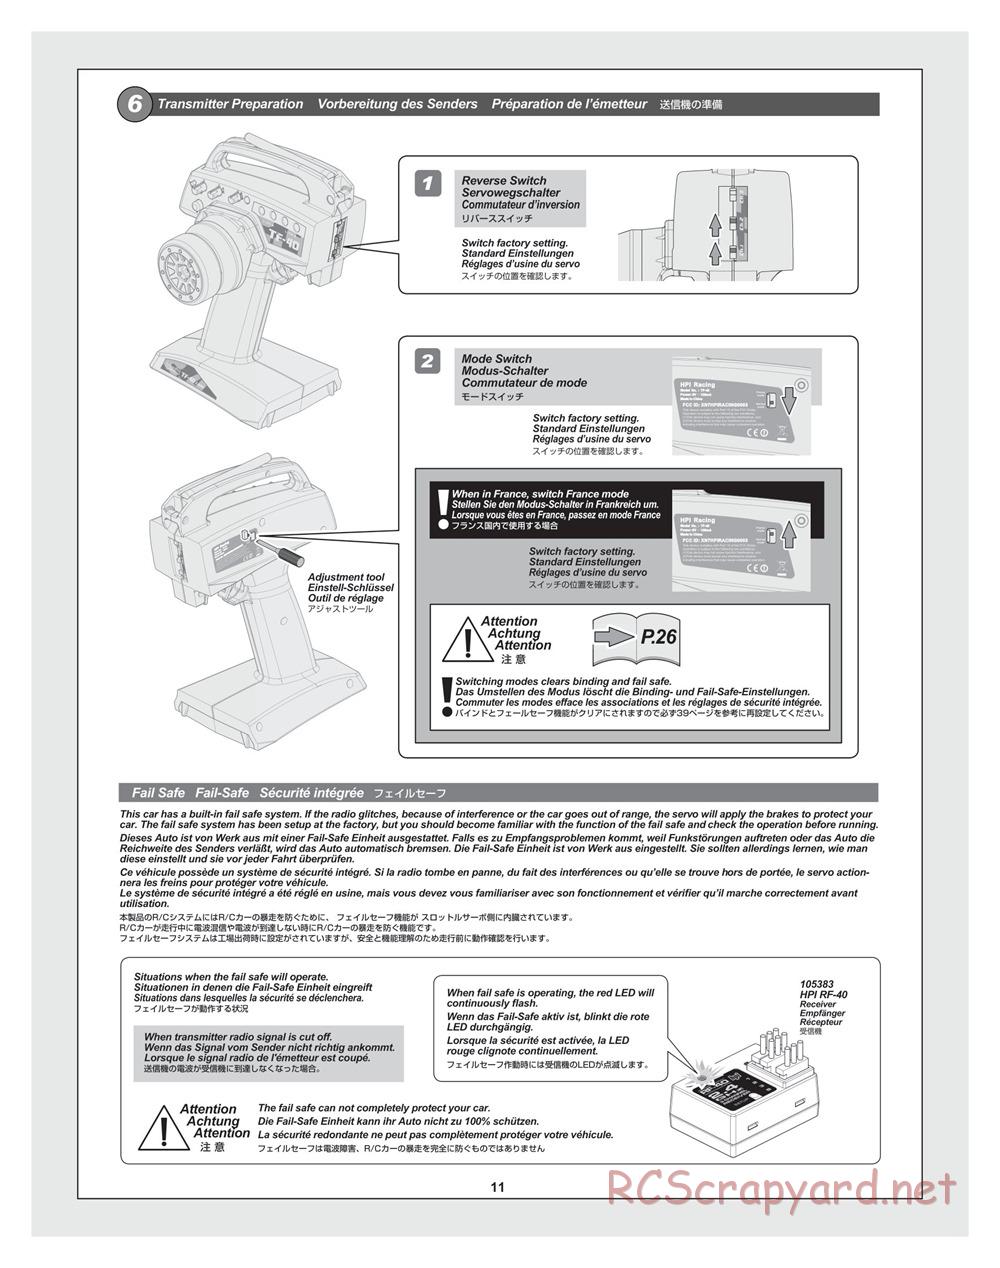 HPI - Bullet ST 3.0 (2011) - Manual - Page 11